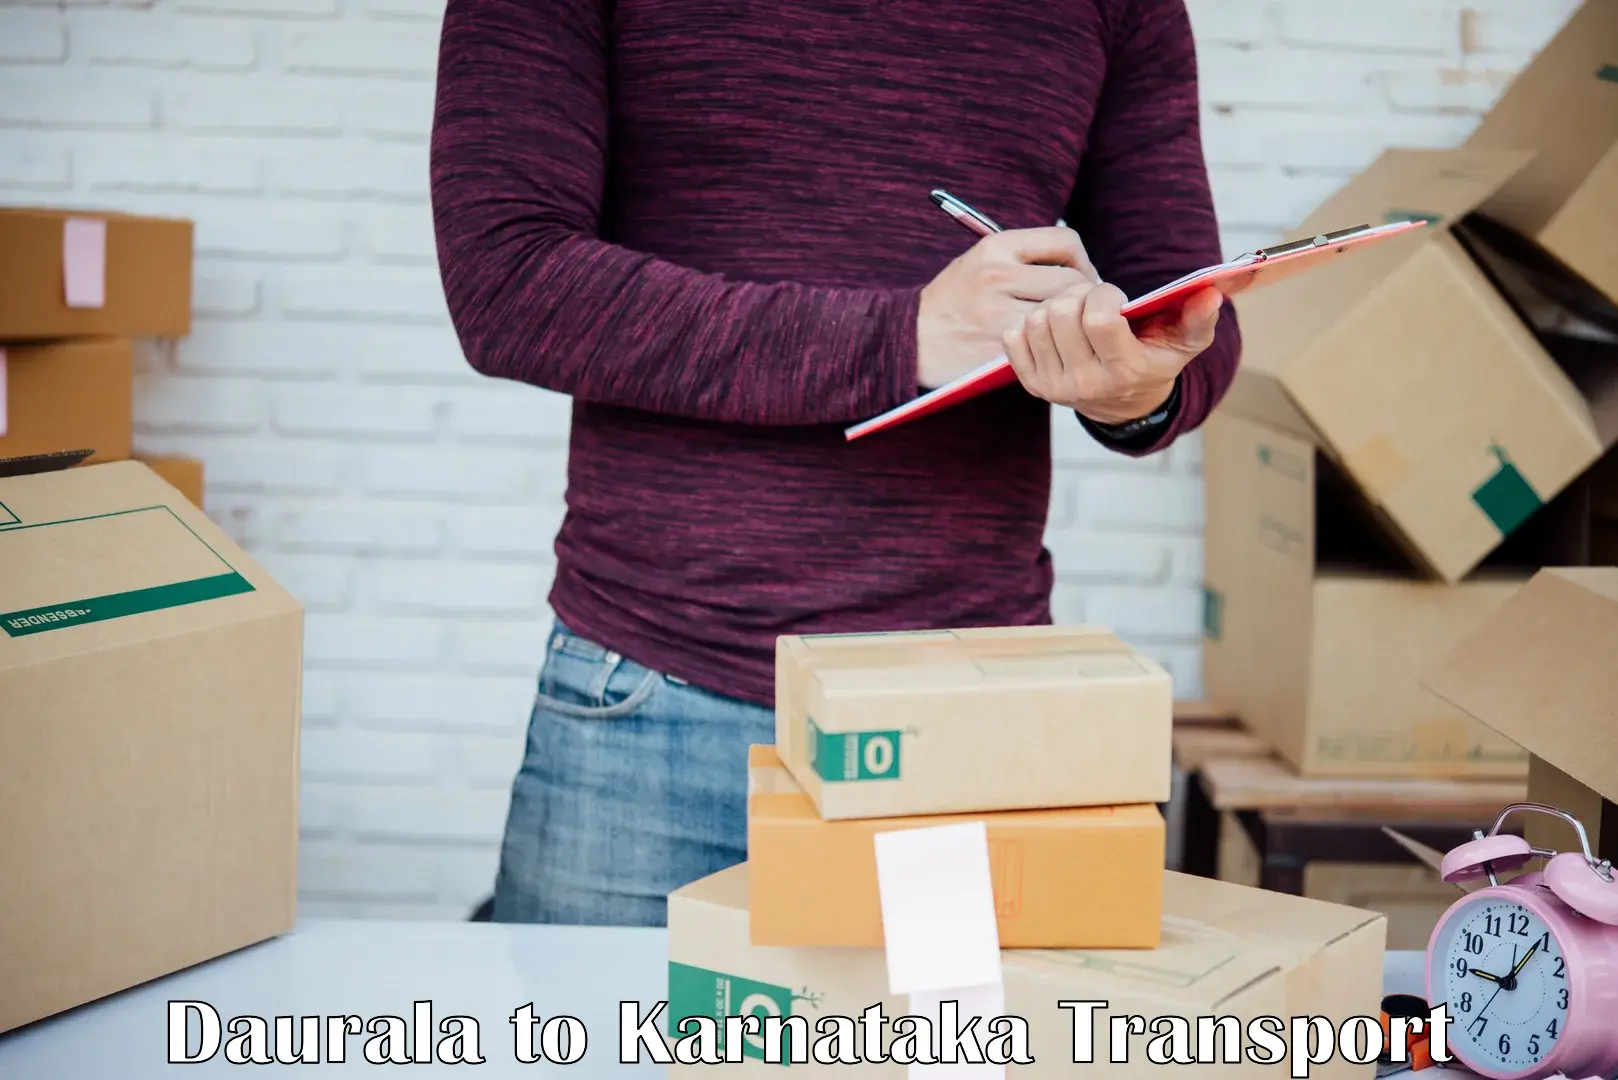 Online transport booking Daurala to Ranebennur